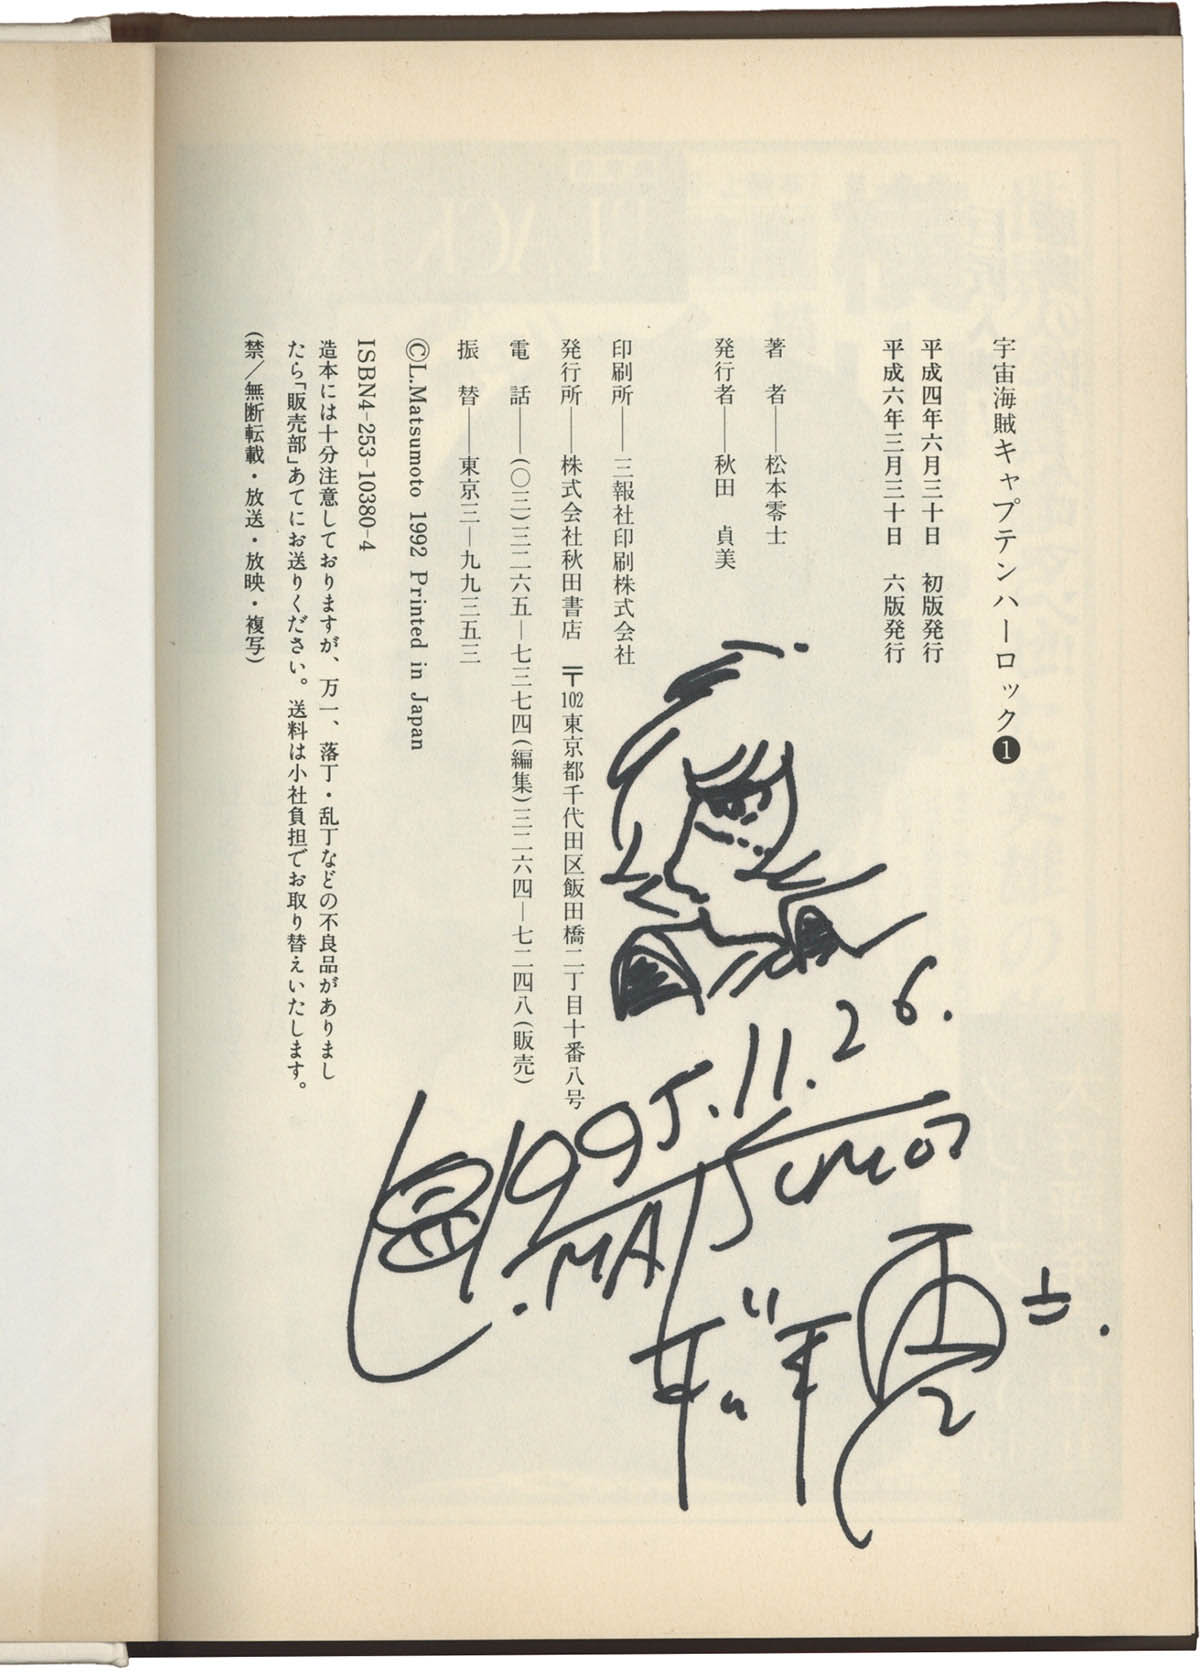 松本零士先生 キャプテンハーロック 直筆イラスト 直筆サイン入り色紙